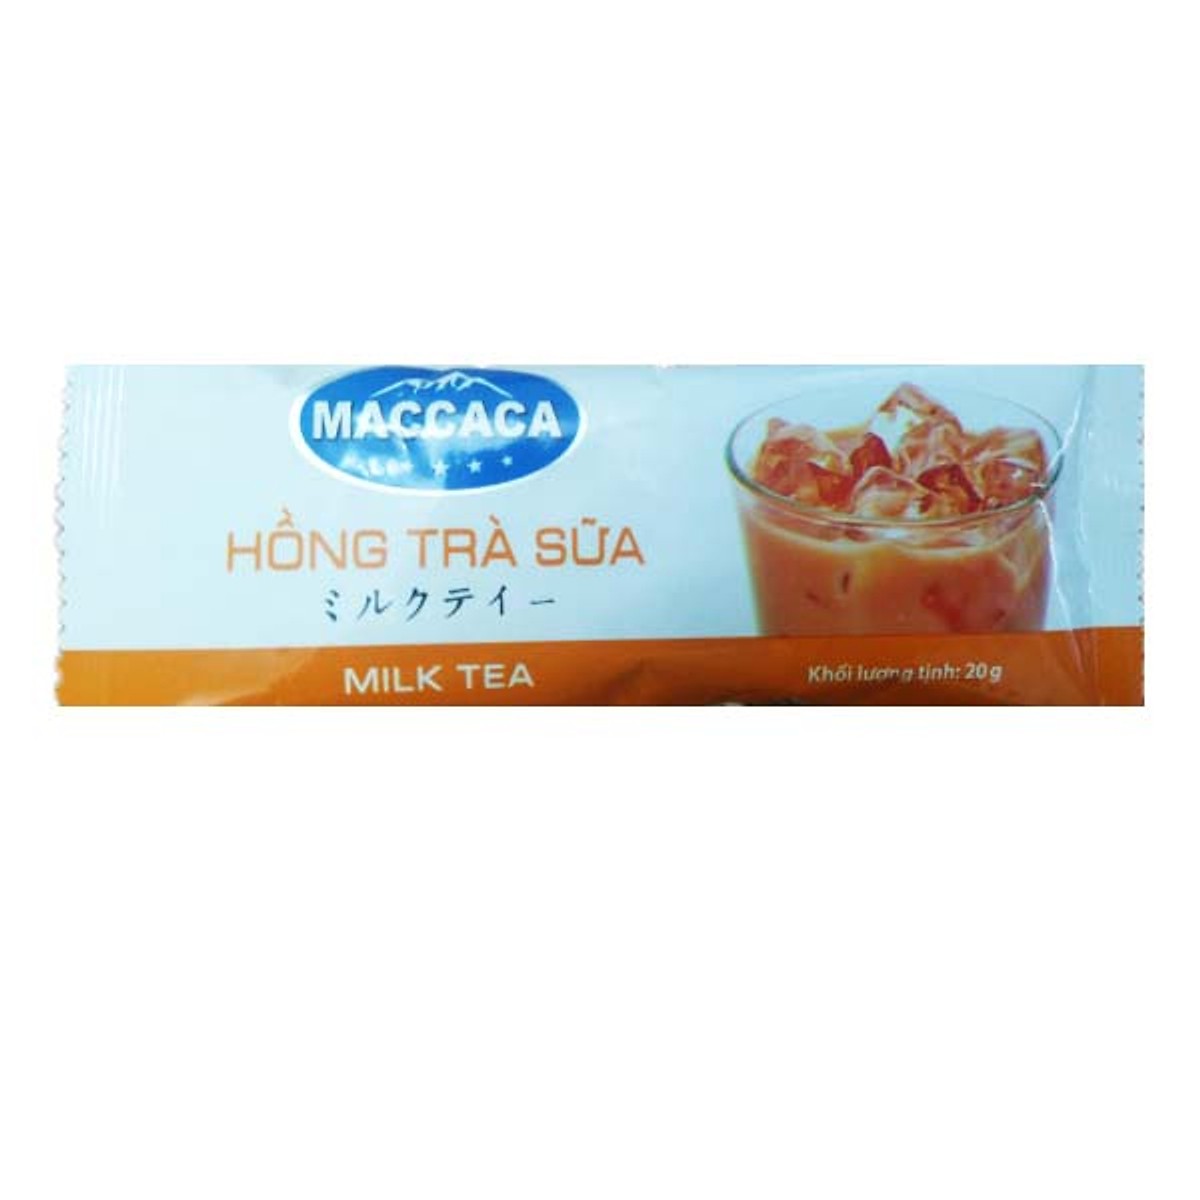 Hộp 100 Túi Đựng Thực Phẩm Hàn Quốc Size M + Tặng Hồng Trà Sữa (Cafe) Maccaca 20g